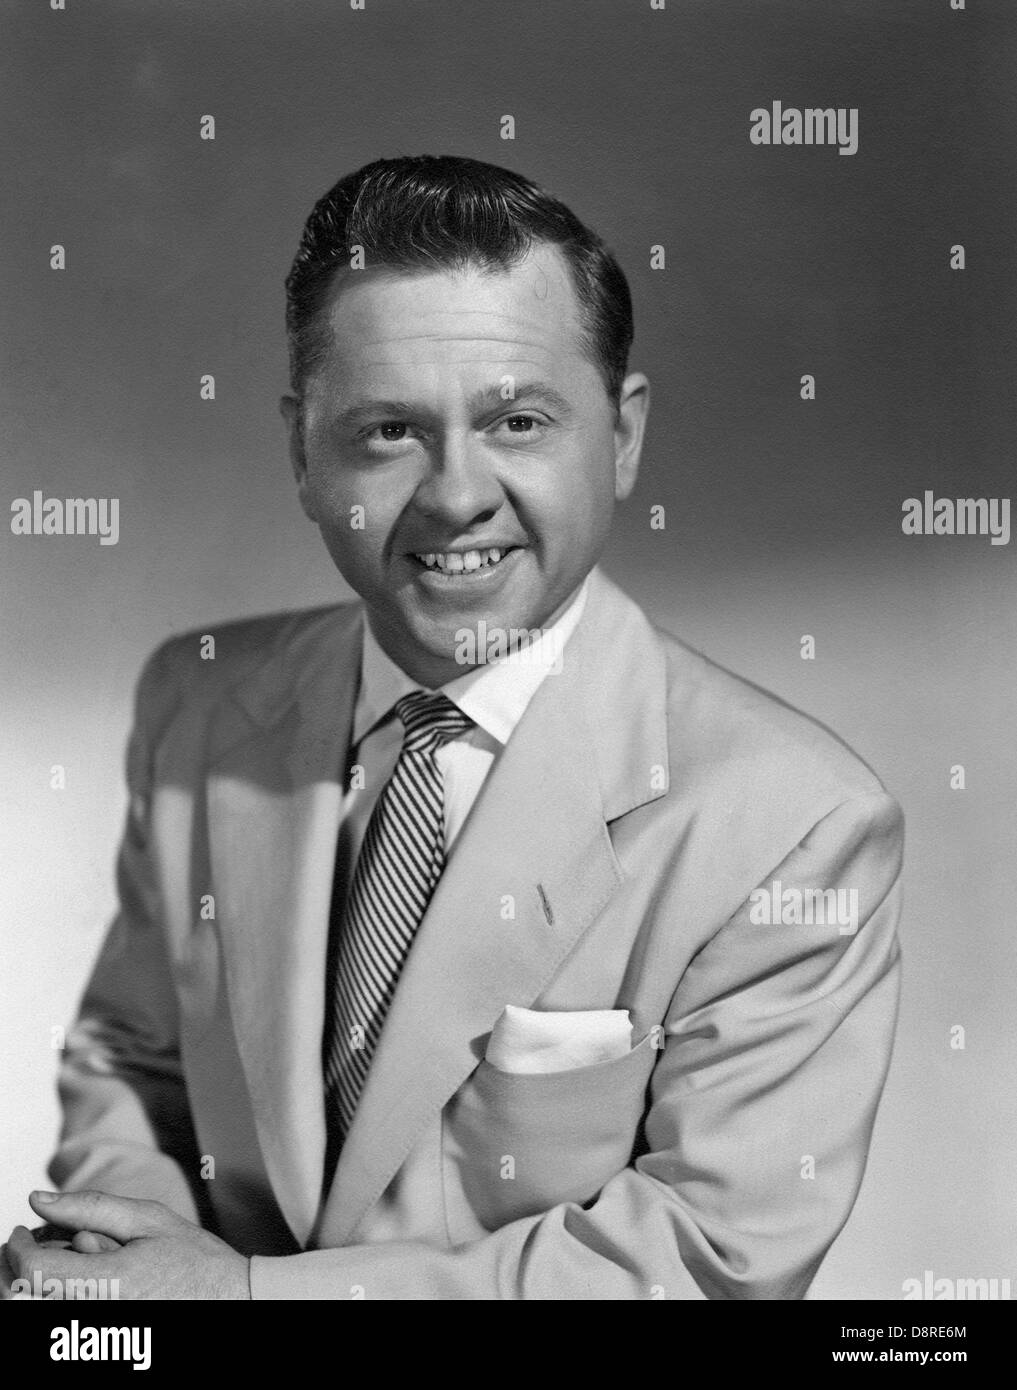 Actor Mickey Rooney, Studio Portrait, 1955 Stock Photo - Alamy